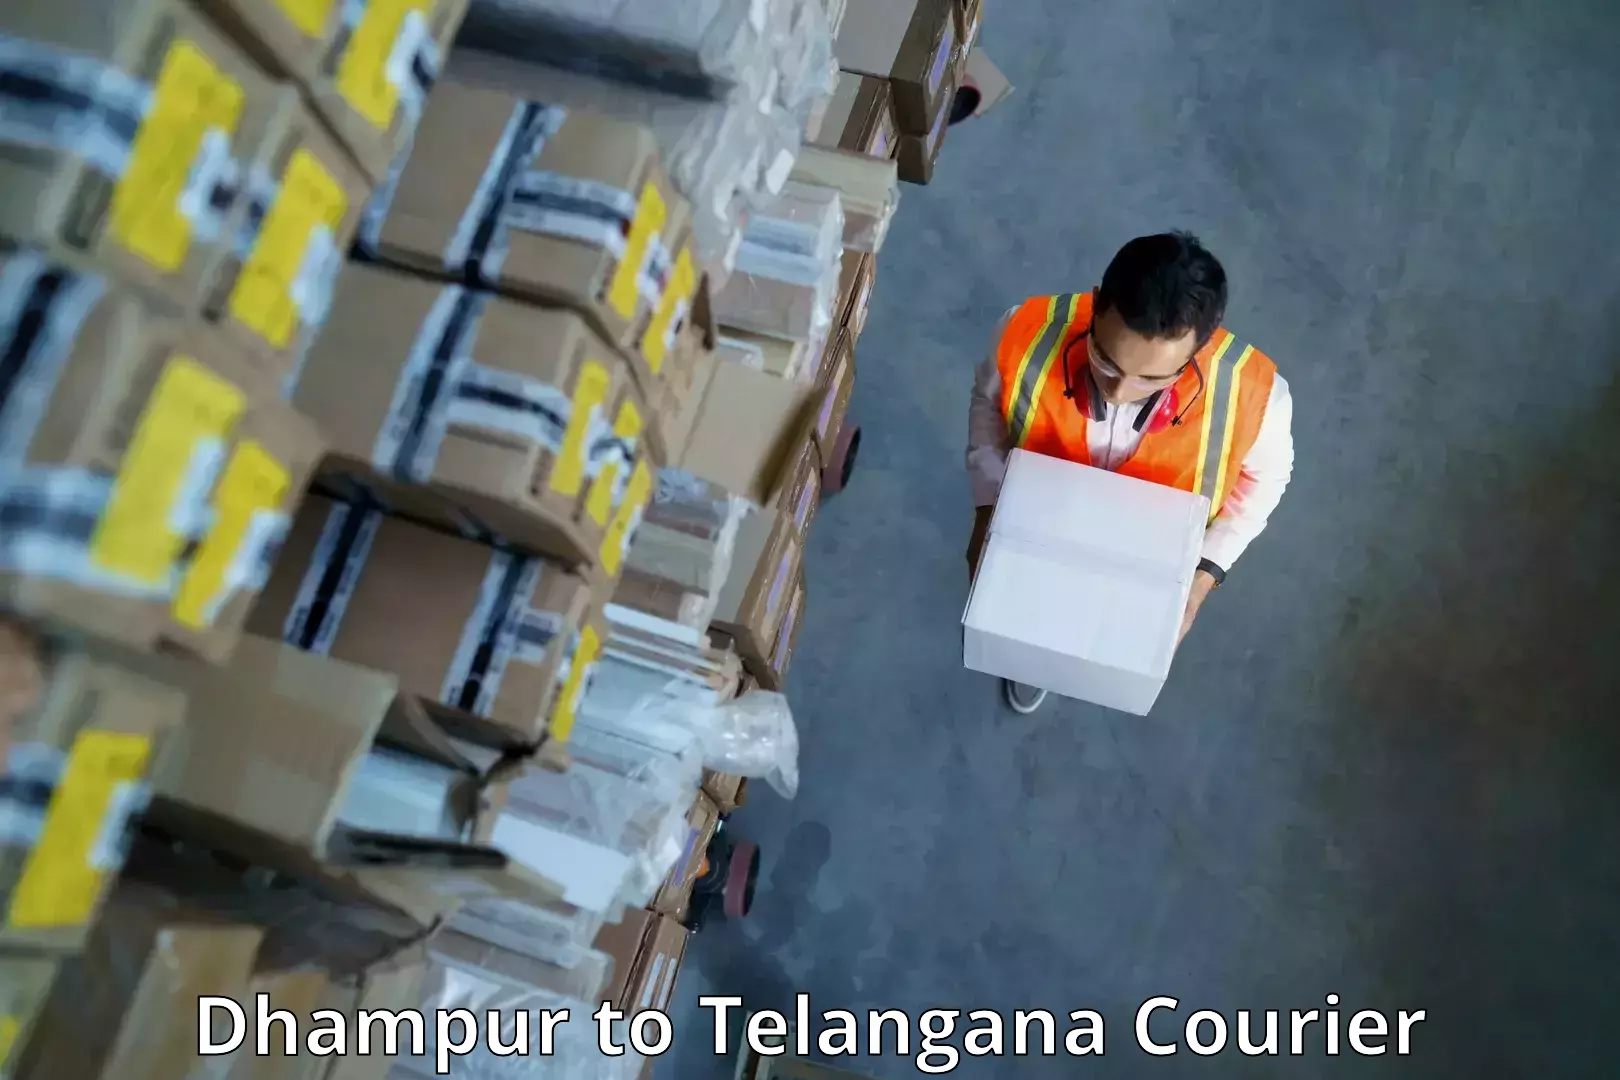 Express logistics providers Dhampur to Sujatha Nagar